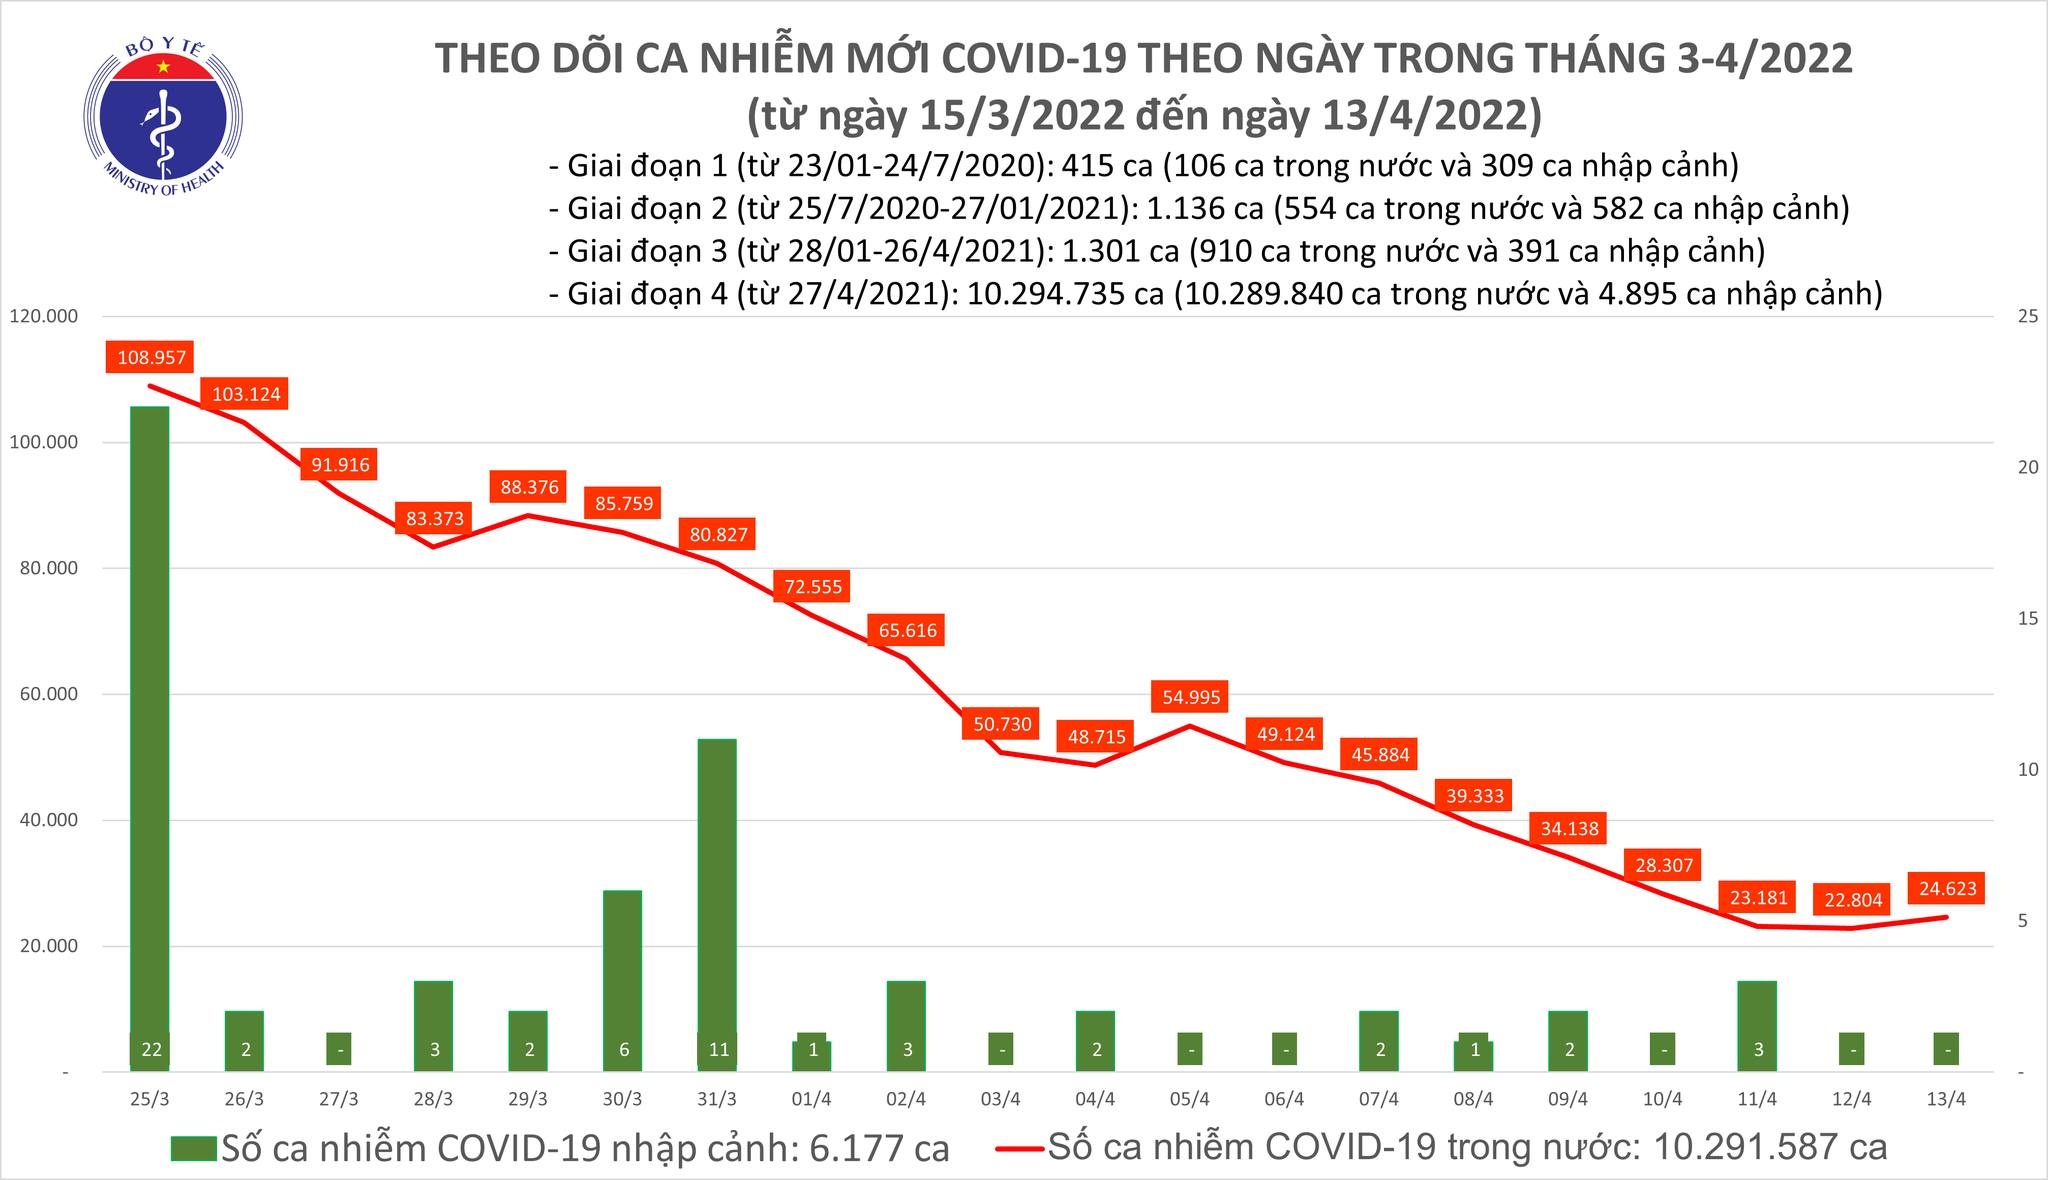 Việt Nam ghi nhận 24.623 ca mắc mới COVID-19 trong ngày 13/4